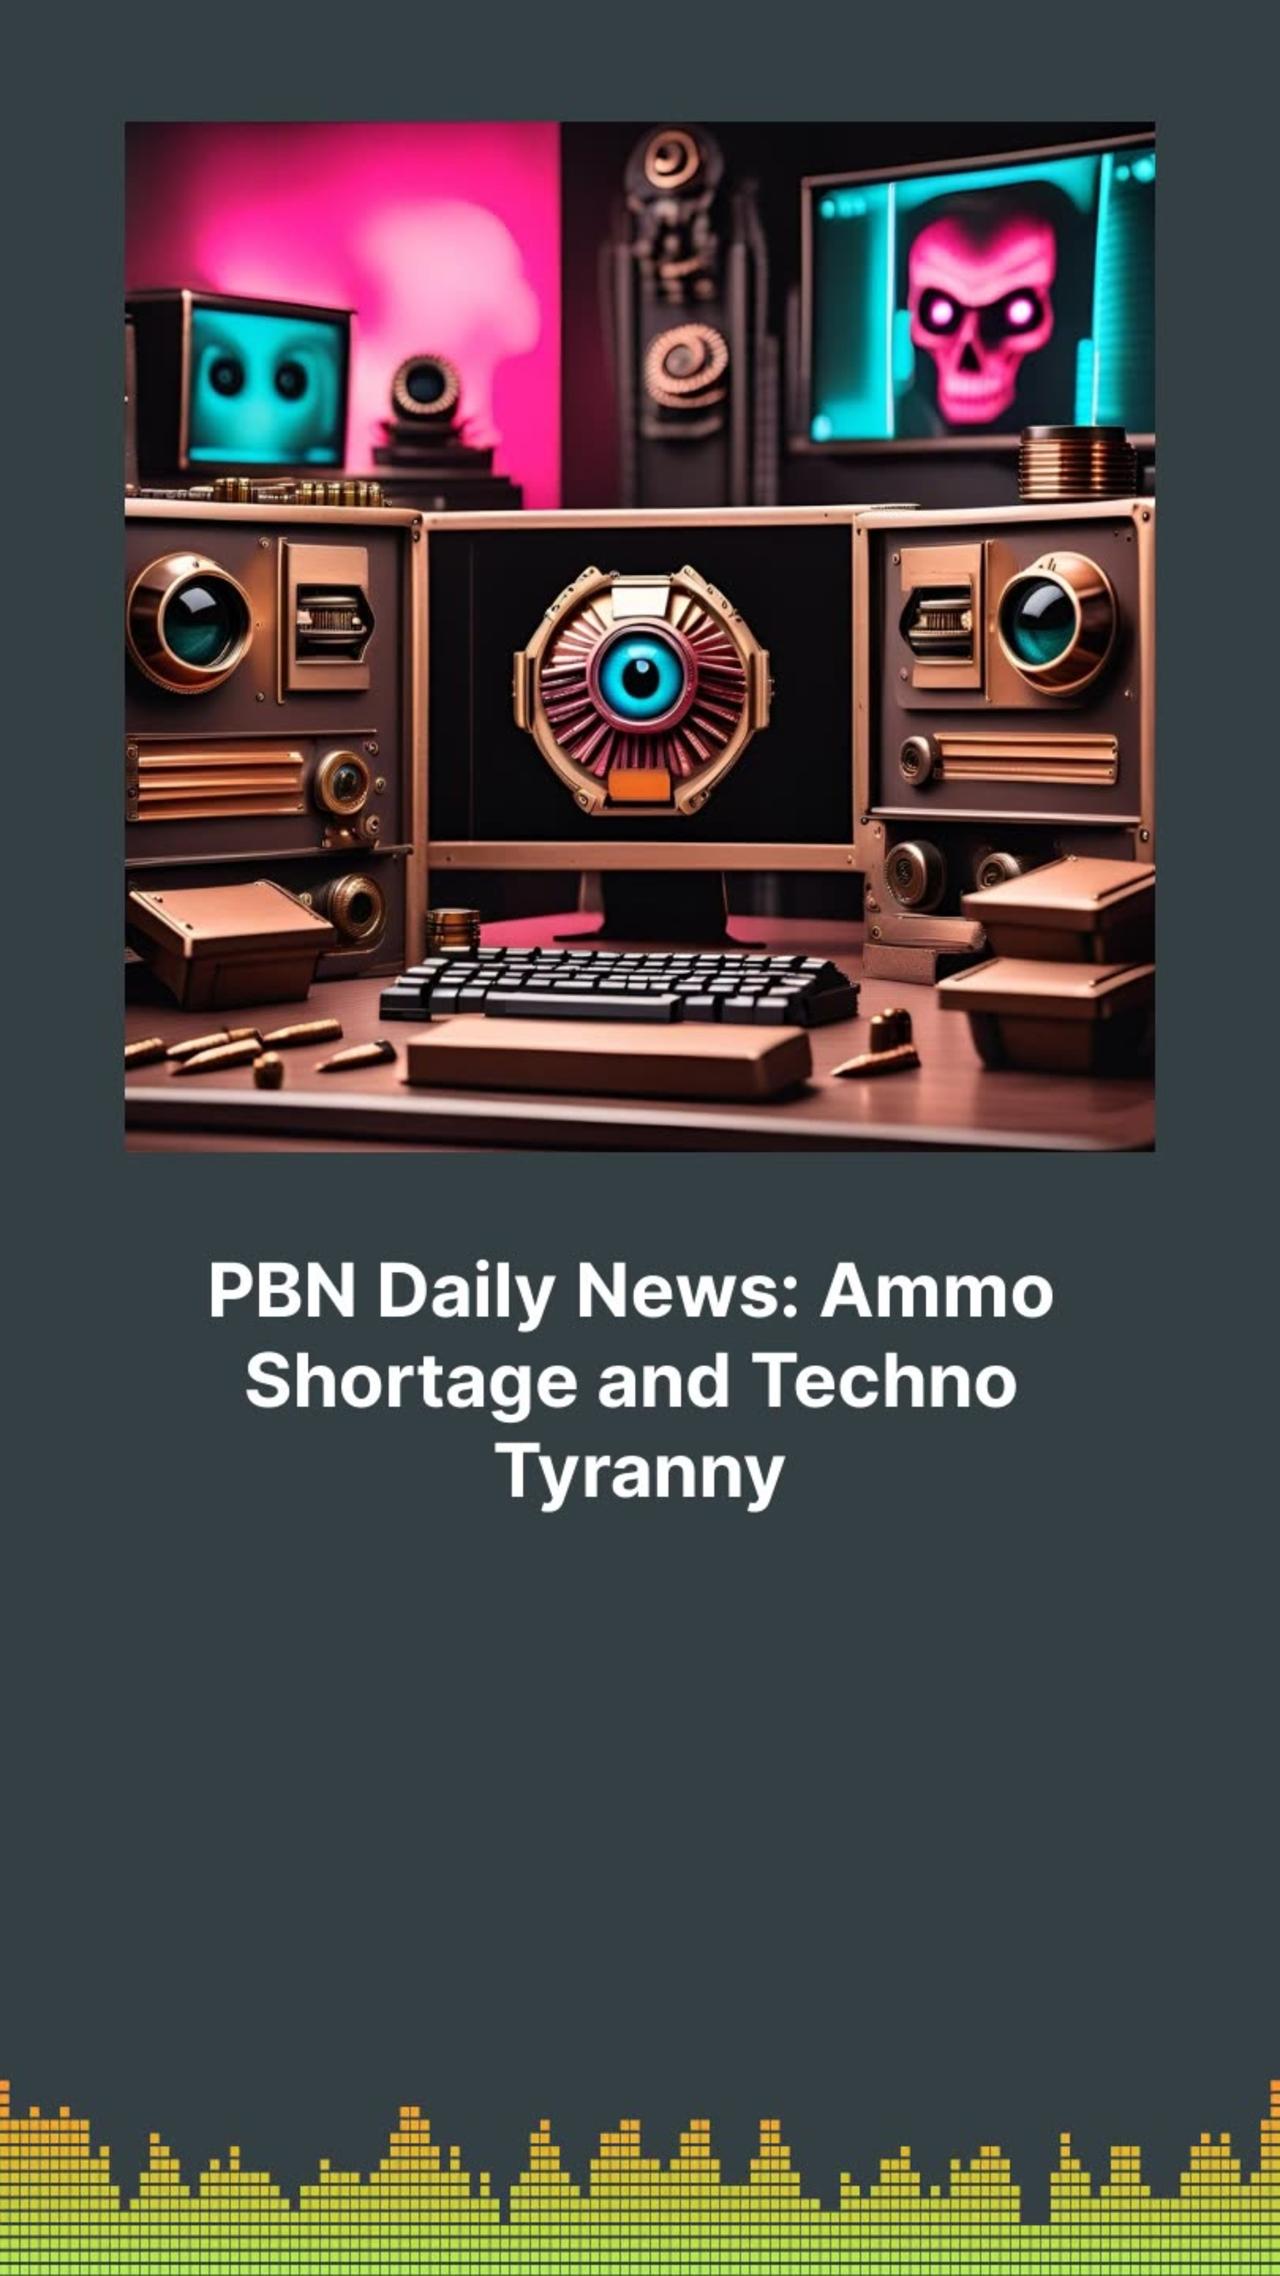 PBN Daily News: Ammo Shortage and Techno Tyranny